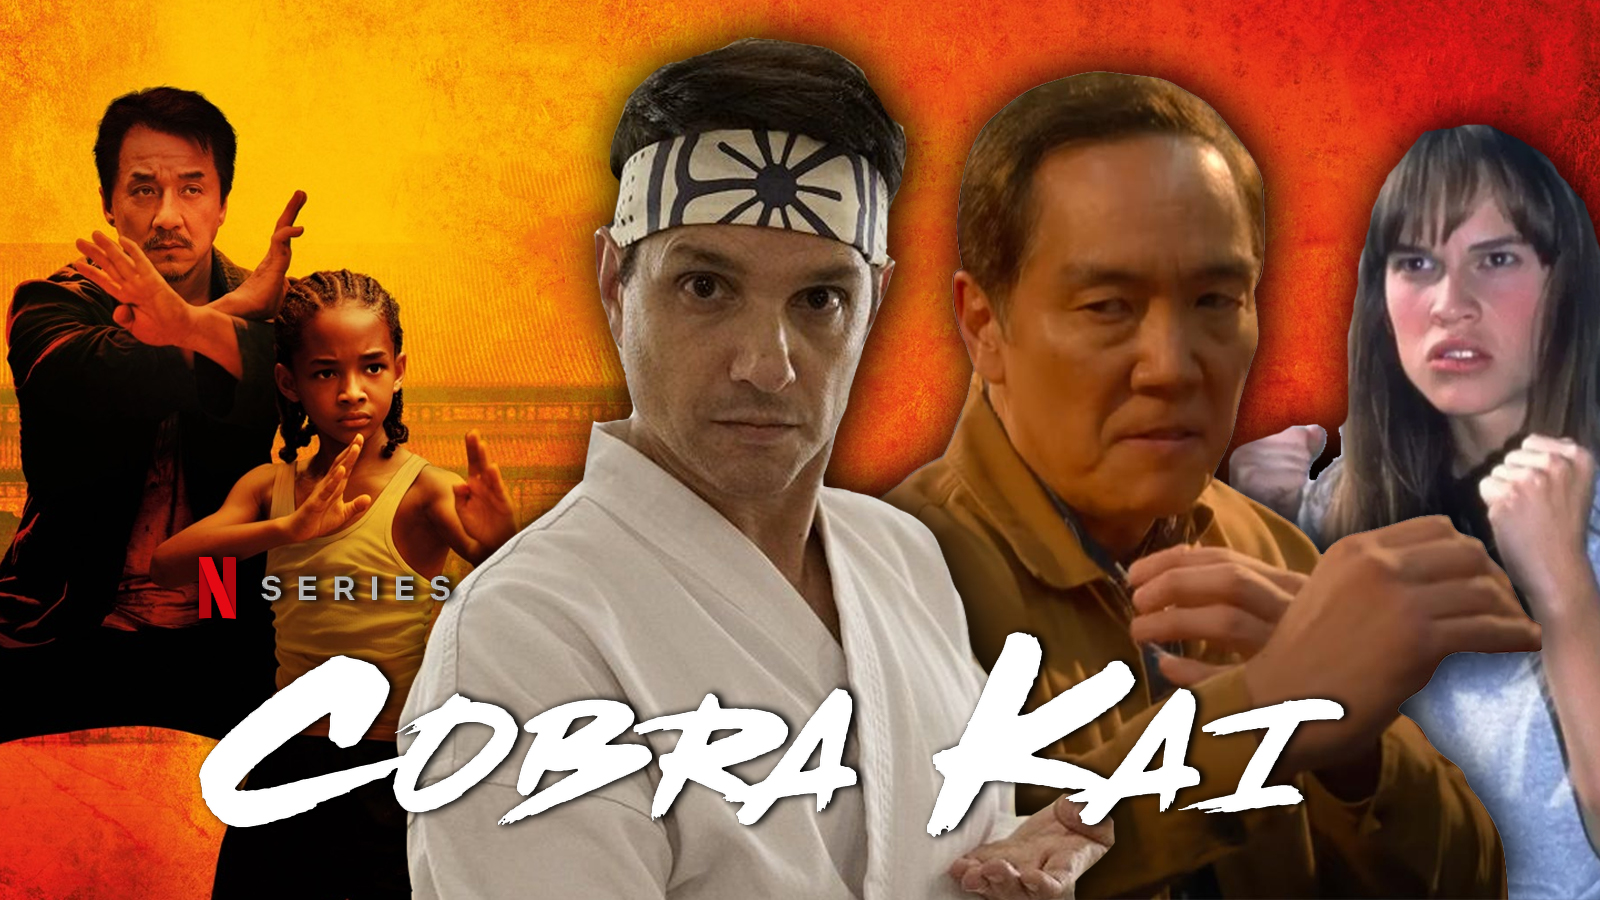 Cobra Kai Season 6: Everything to Know About It